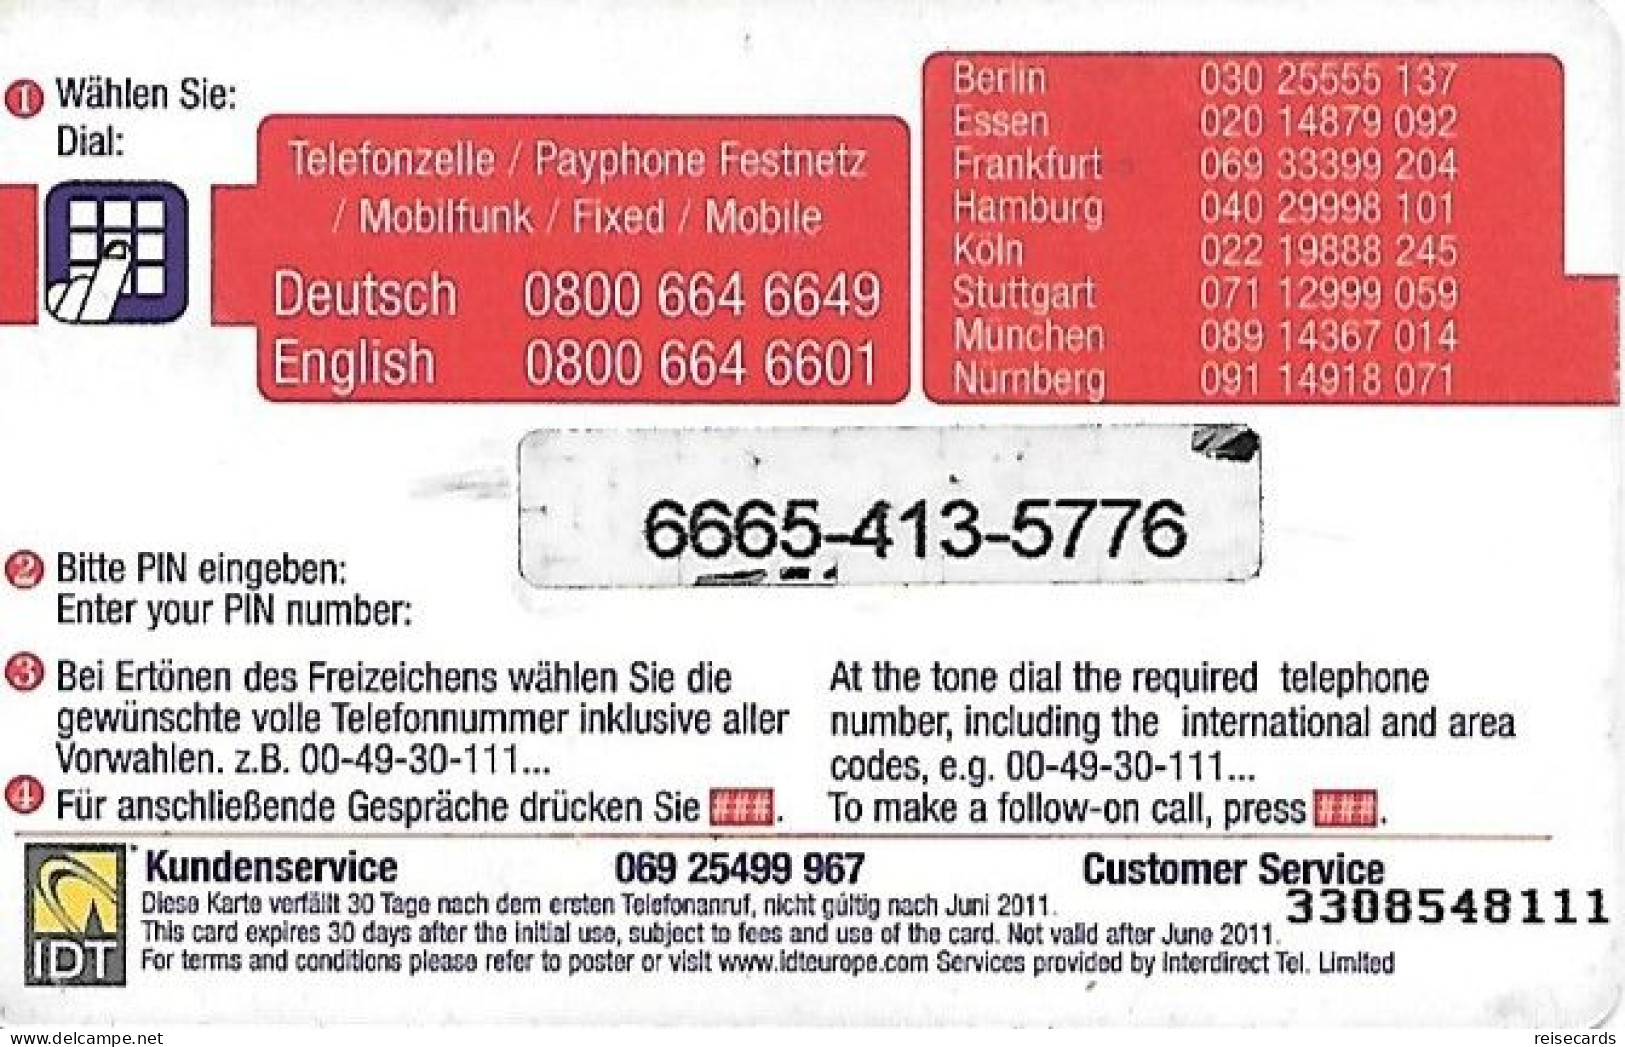 Germany: Prepaid IDT Call 2 Call - Cellulari, Carte Prepagate E Ricariche